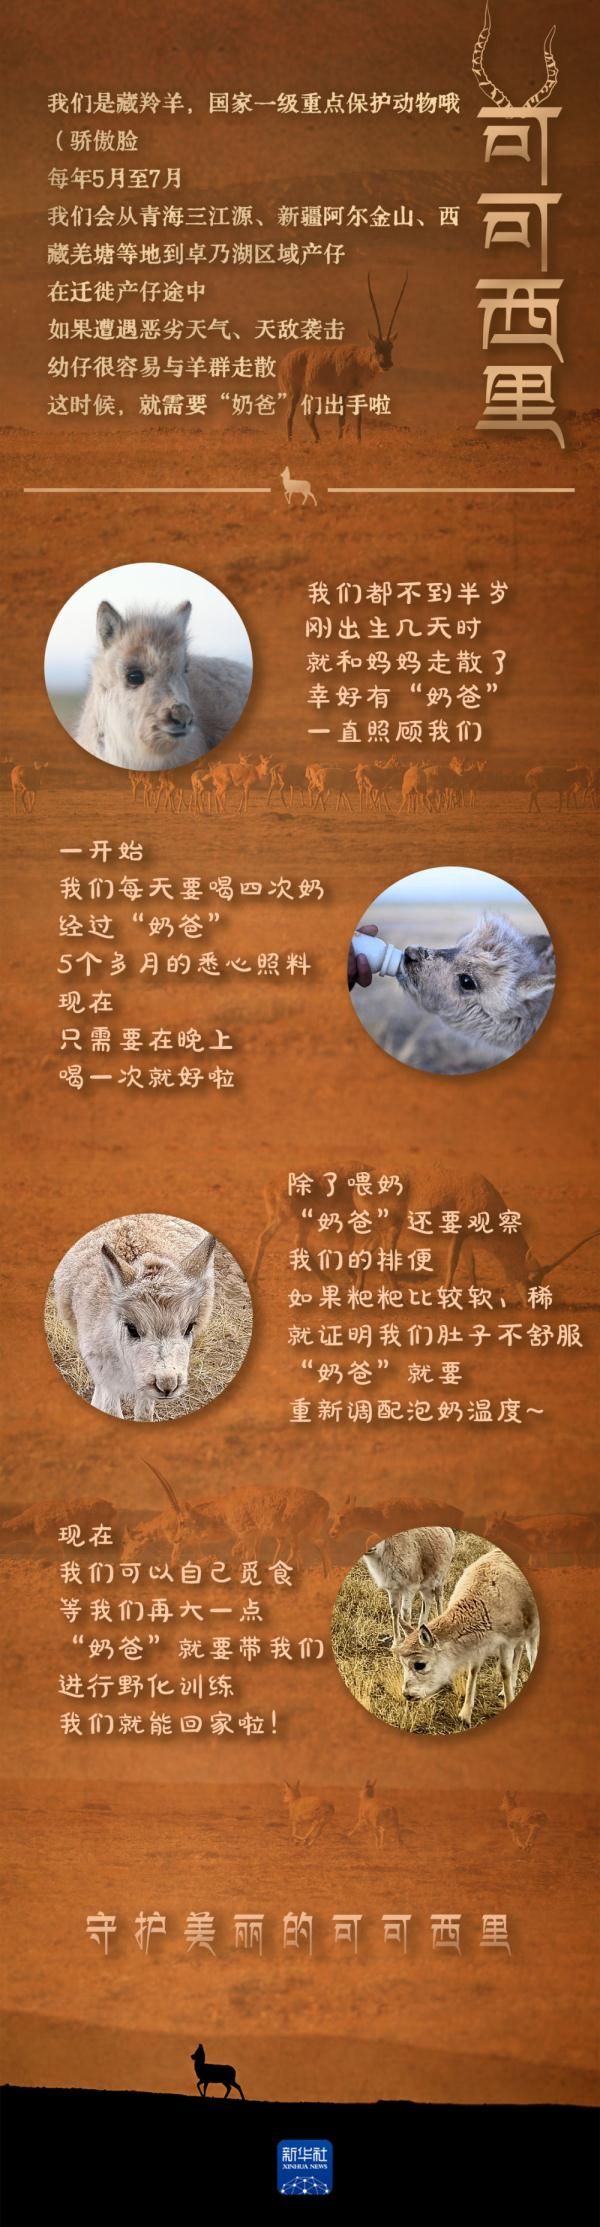 藏羚羊“奶爸”的新年愿望